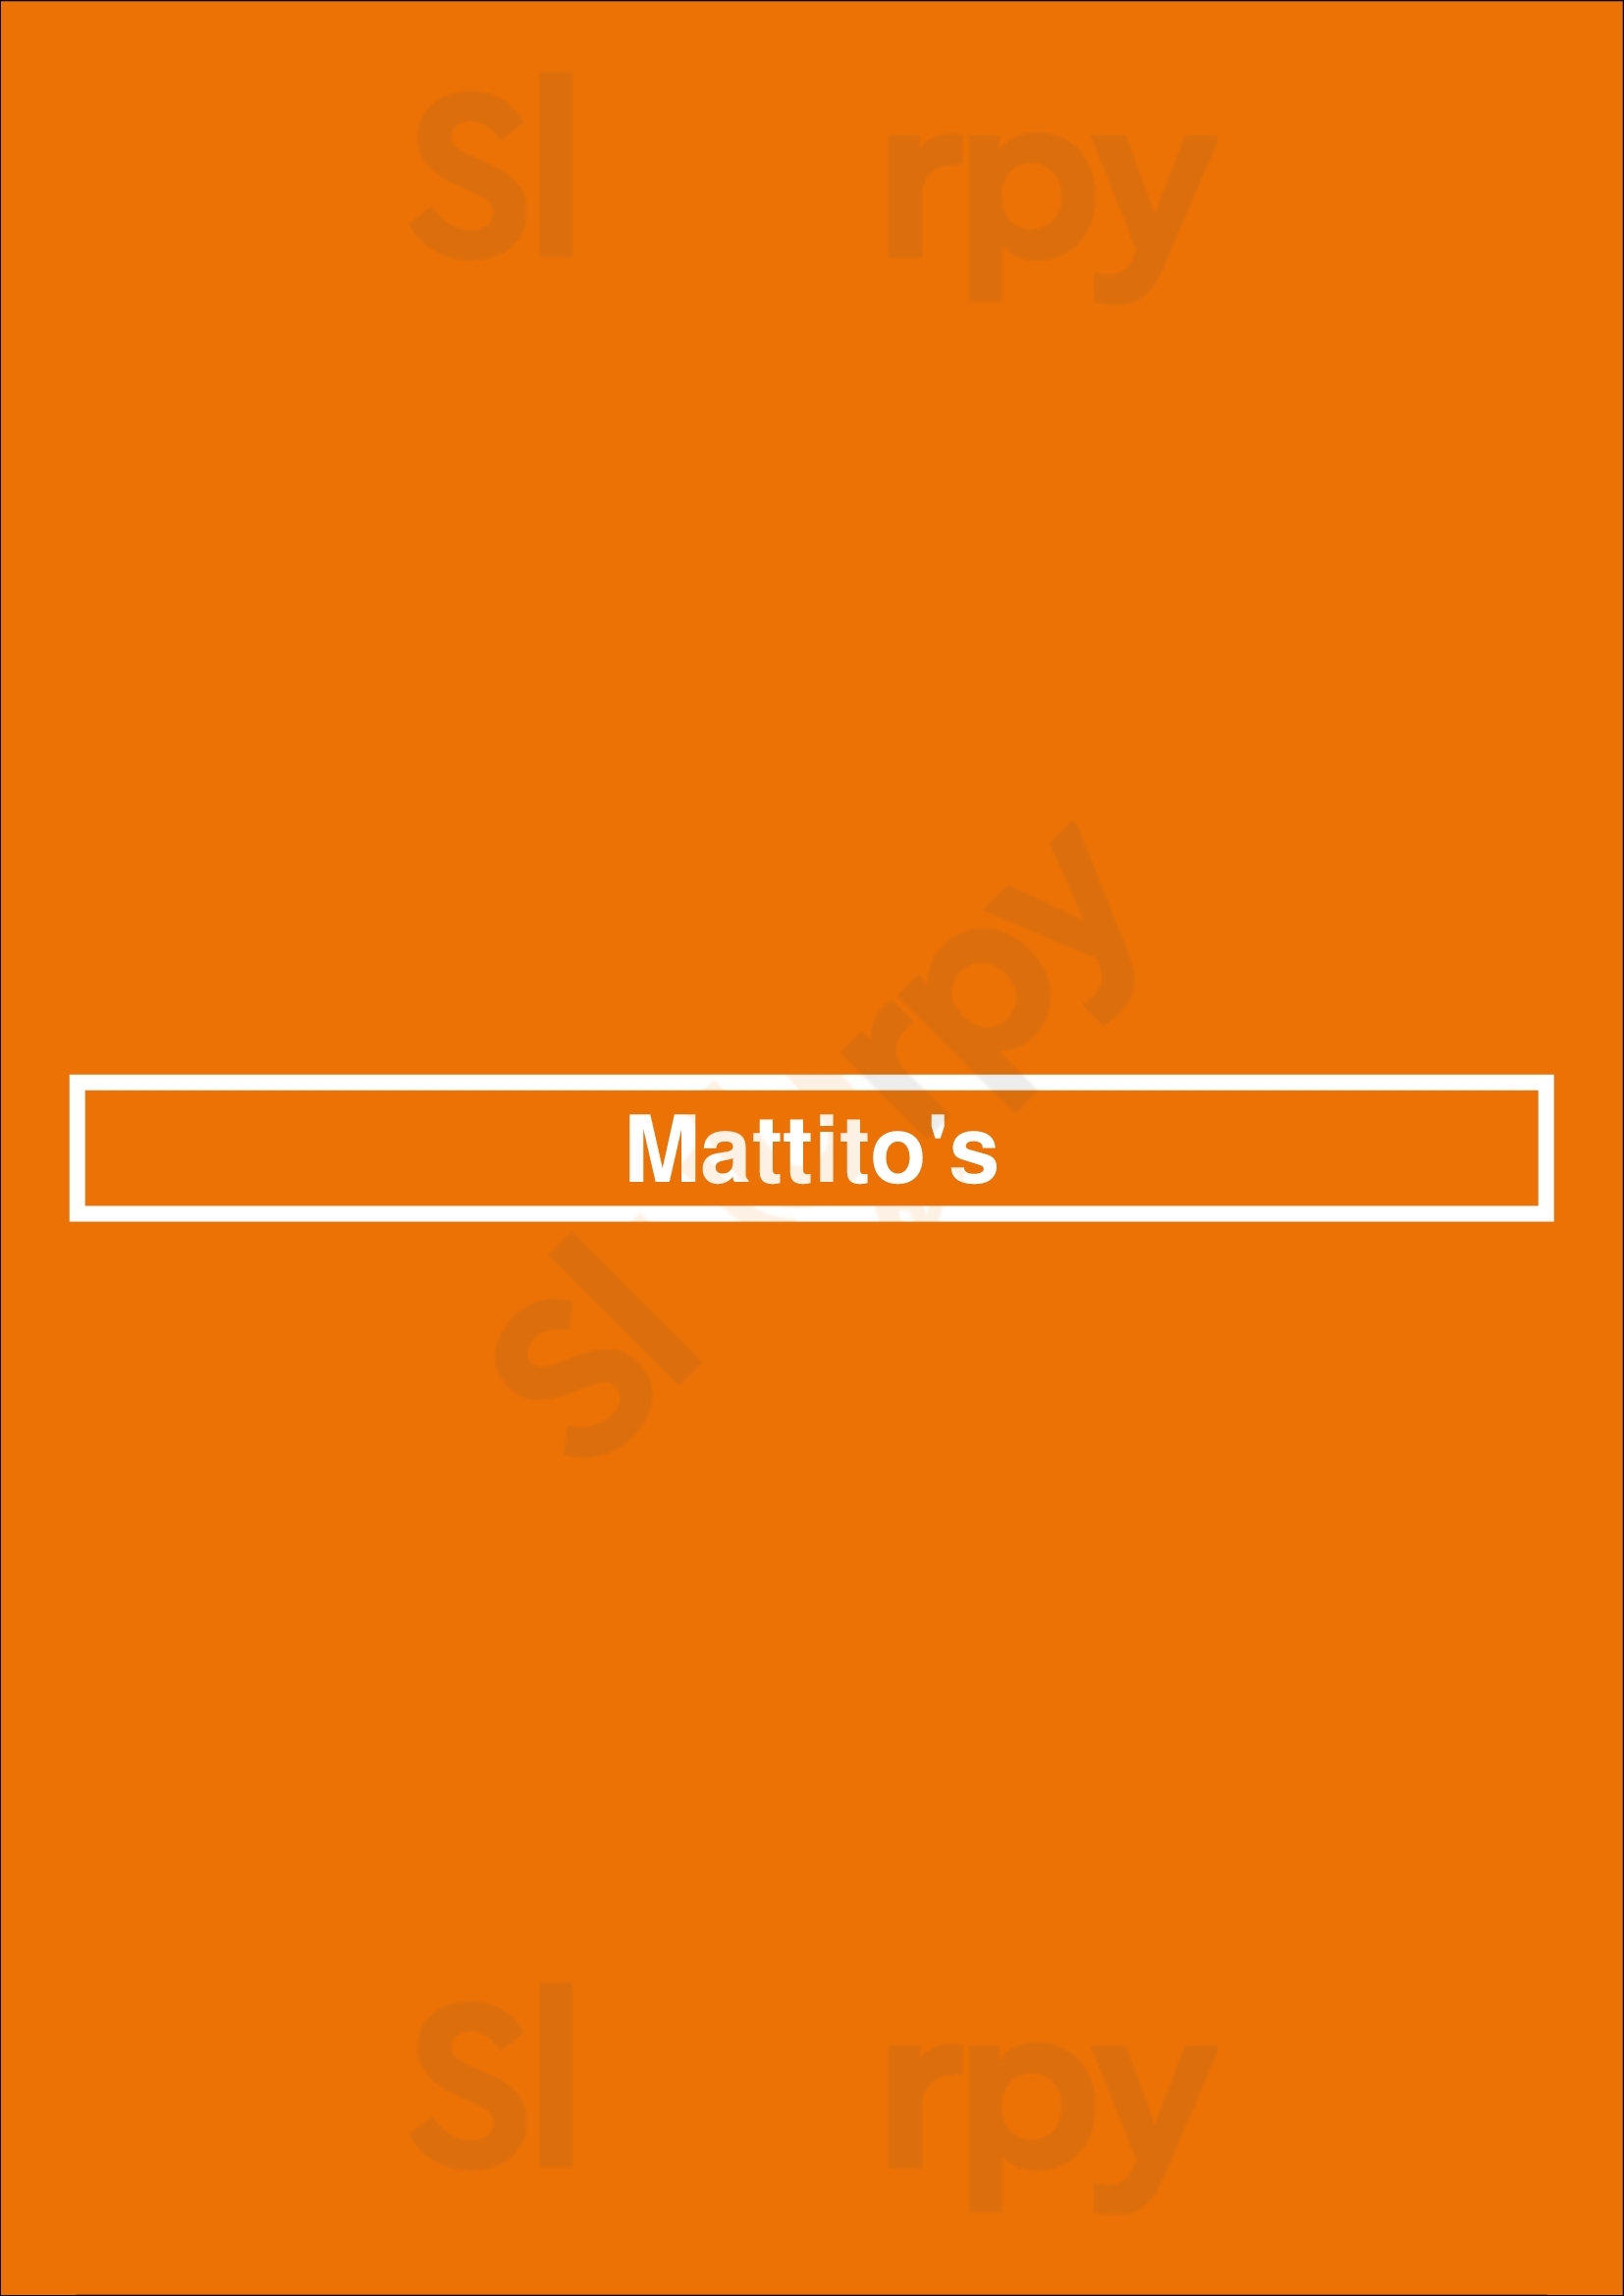 Mattito's Dallas Menu - 1